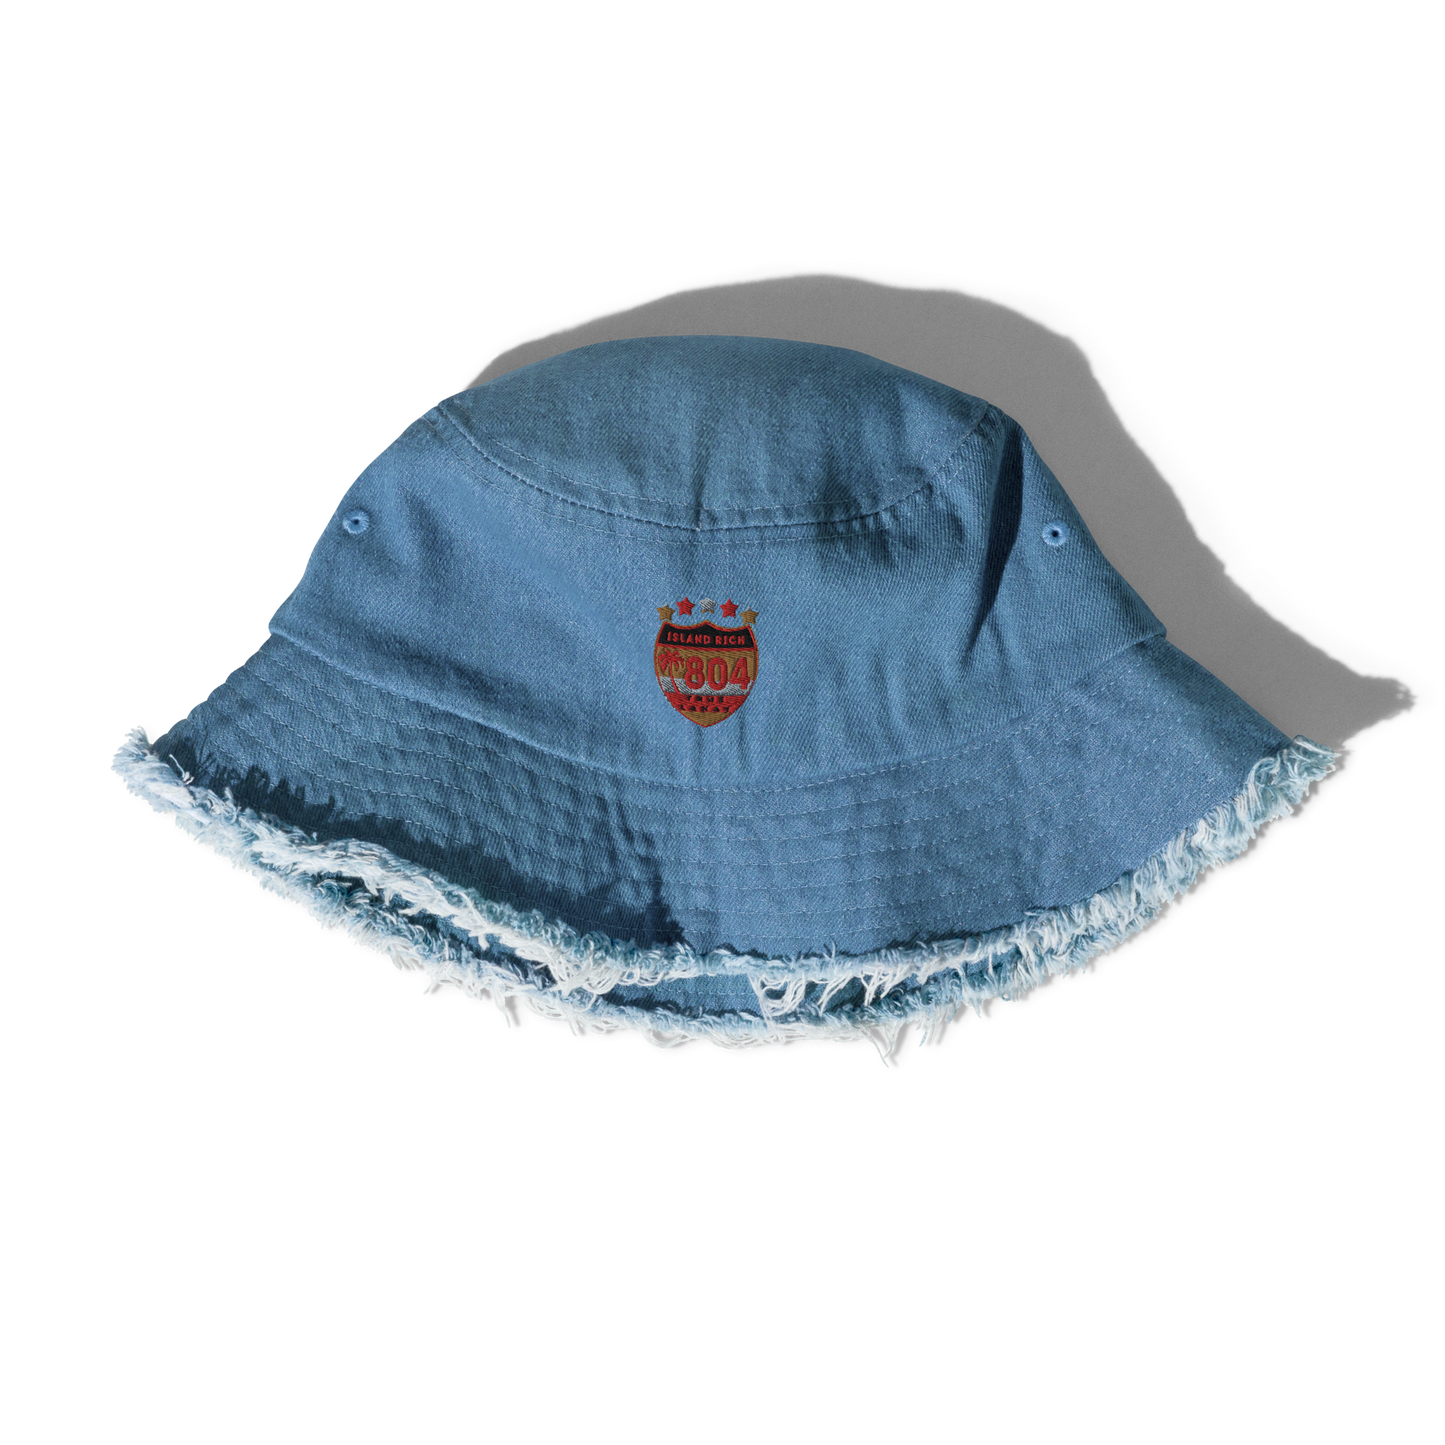 Distressed denim bucket hat